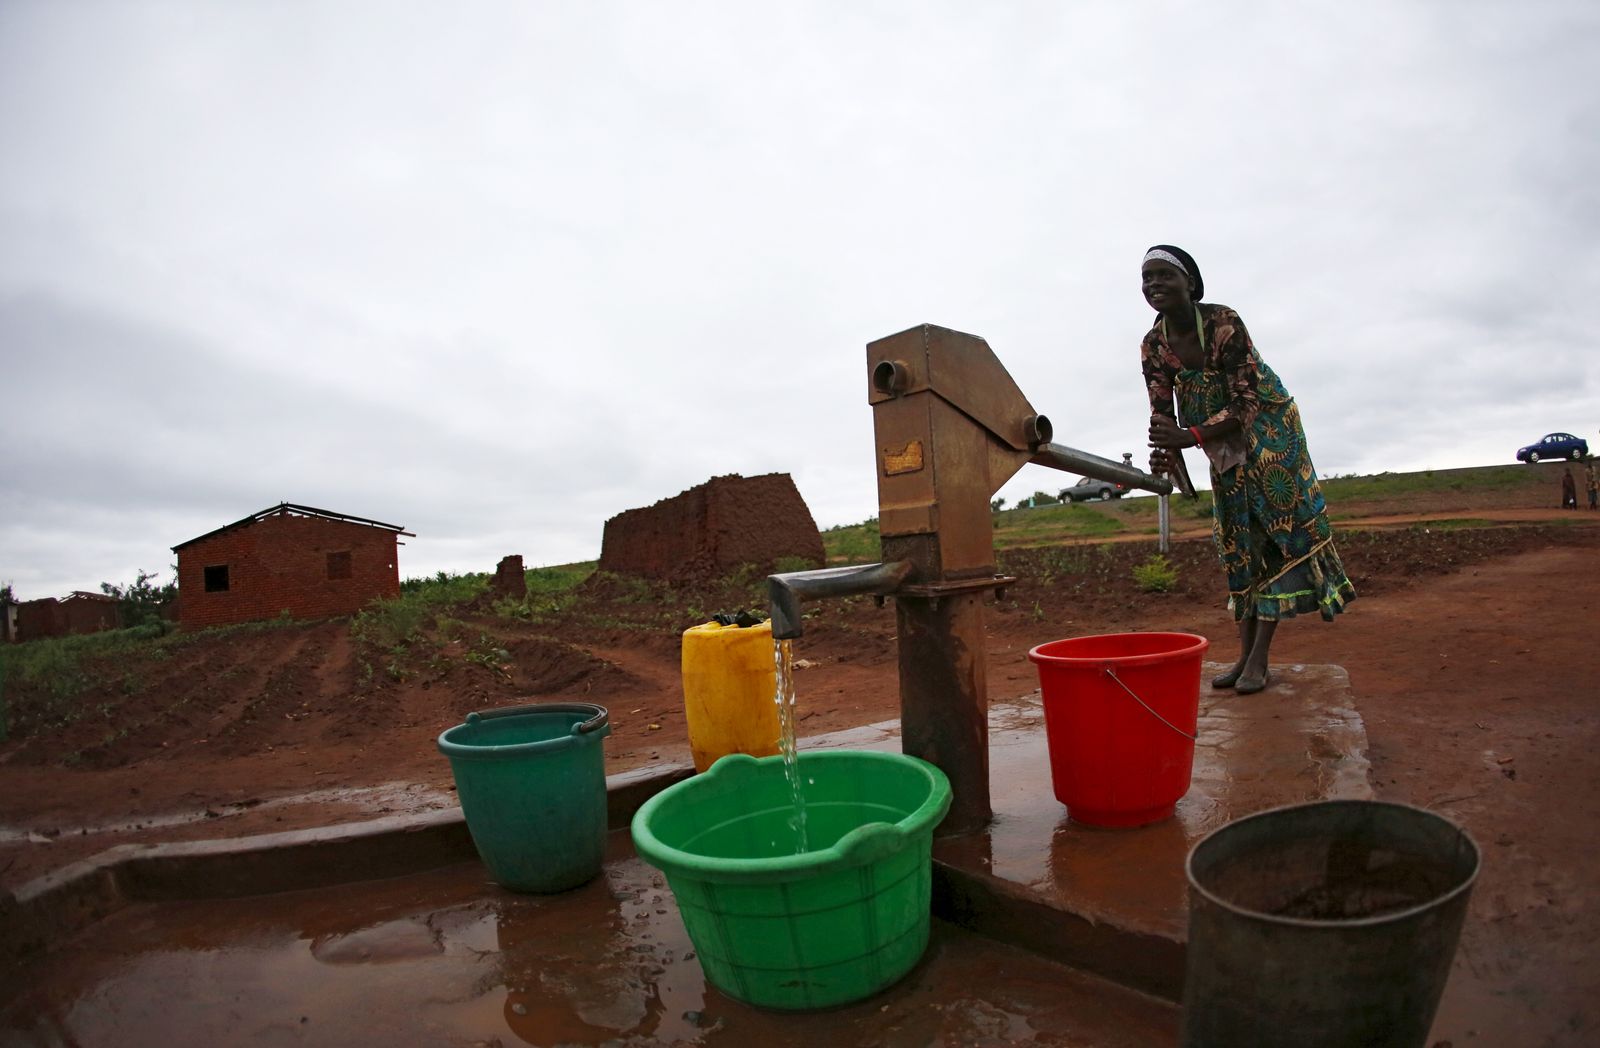 امرأة تضخ المياه من بئر بالقرب من عاصمة ملاوي ليلونجوي، حيث هدد شح الأمطار بلادها ودول جنوب أفريقيا خلال ظاهرة النينو ما قبل الأخيرة التي شهدتها الأرض بين عامي 2014 و2016 - 2 فبراير 2016 - REUTERS